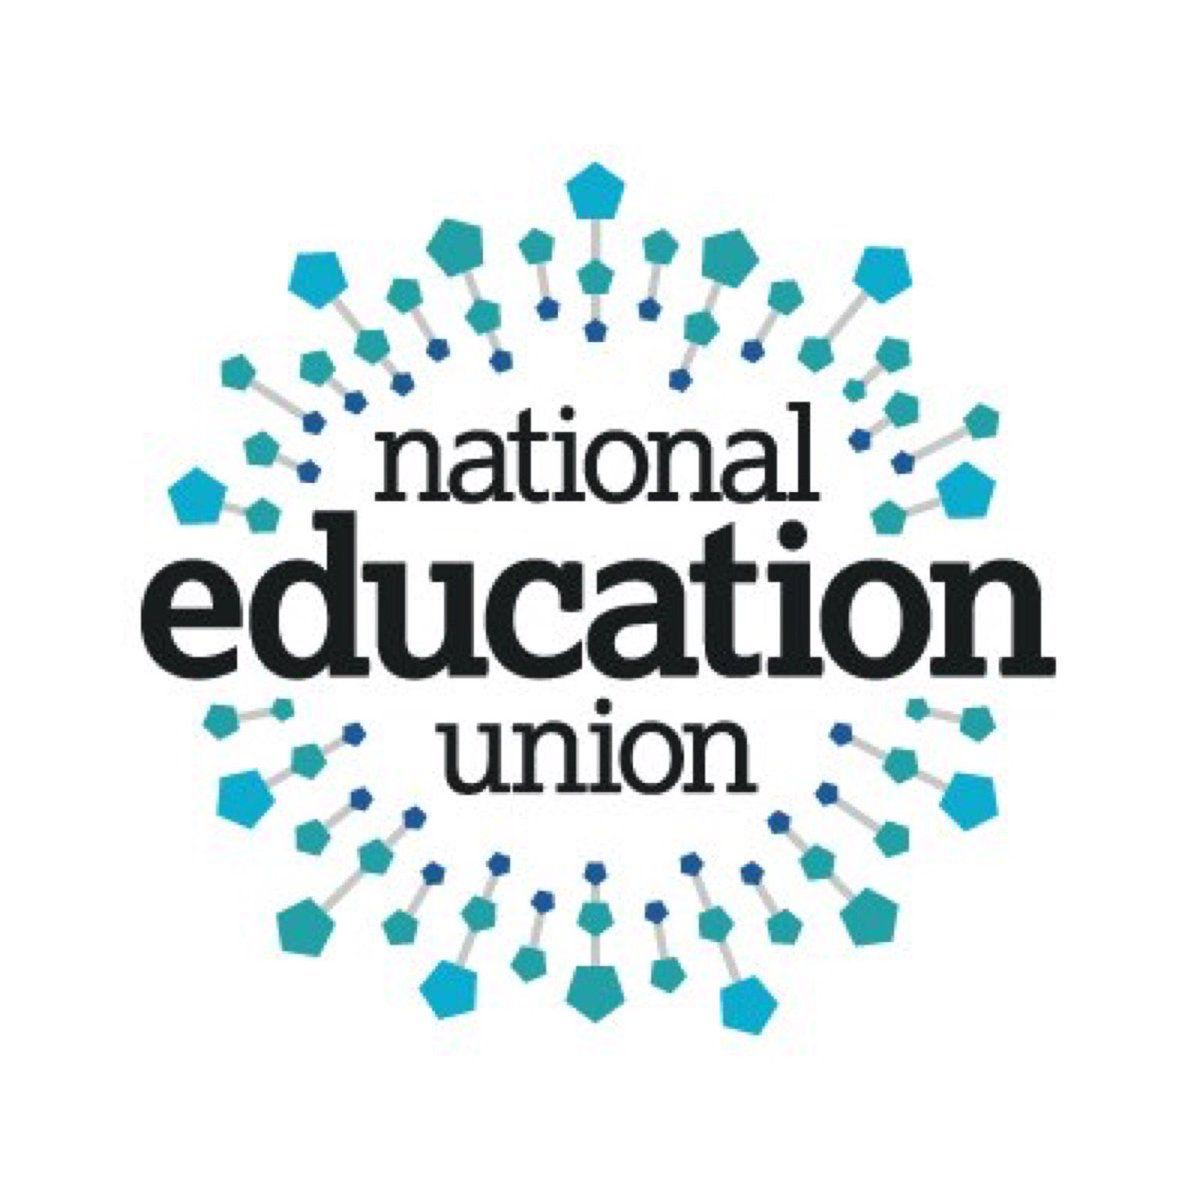 Neu Logo - National Education Union joins Refugee Week partnership